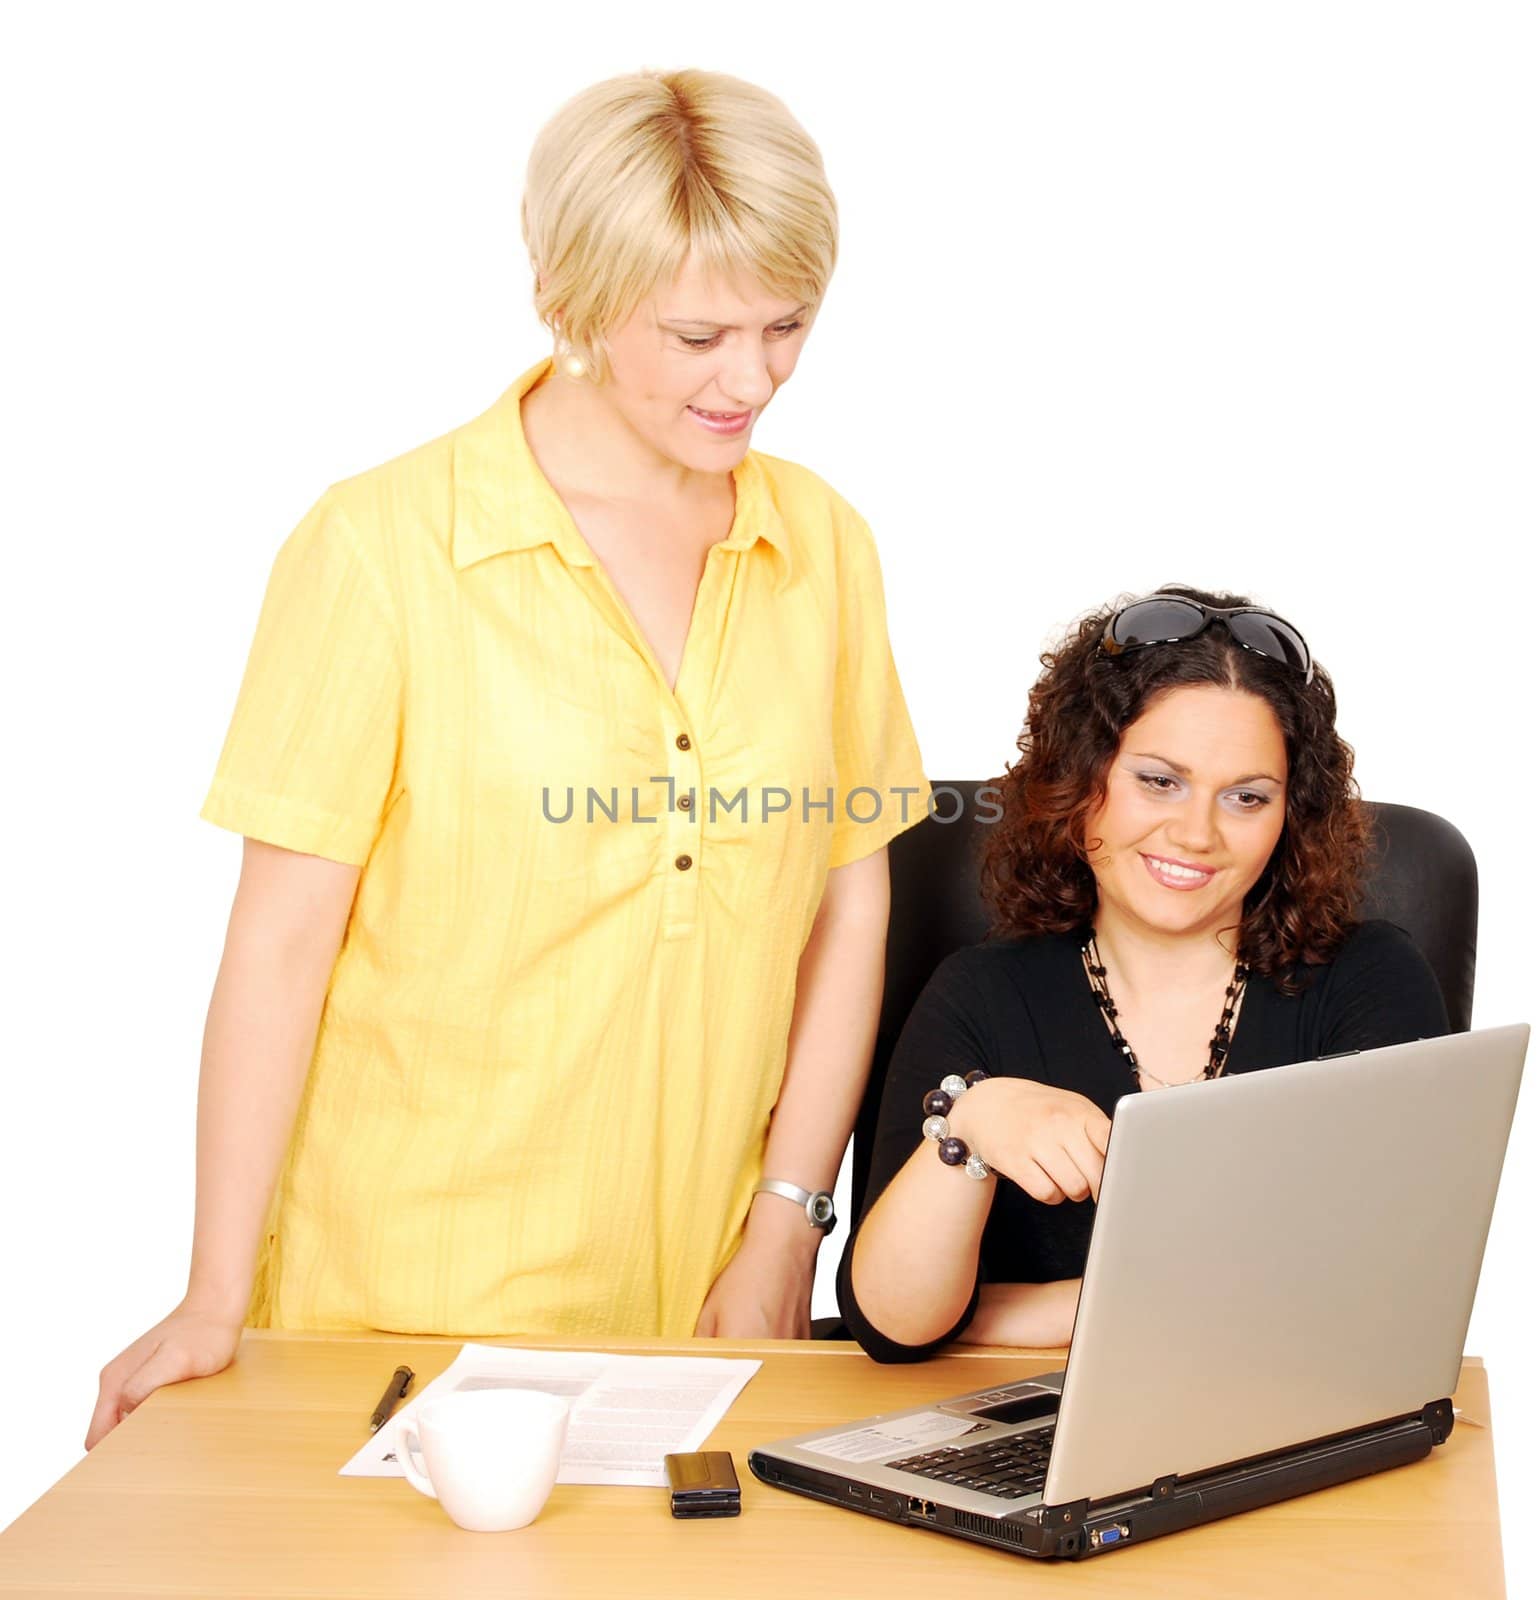 women watch something fun on laptop